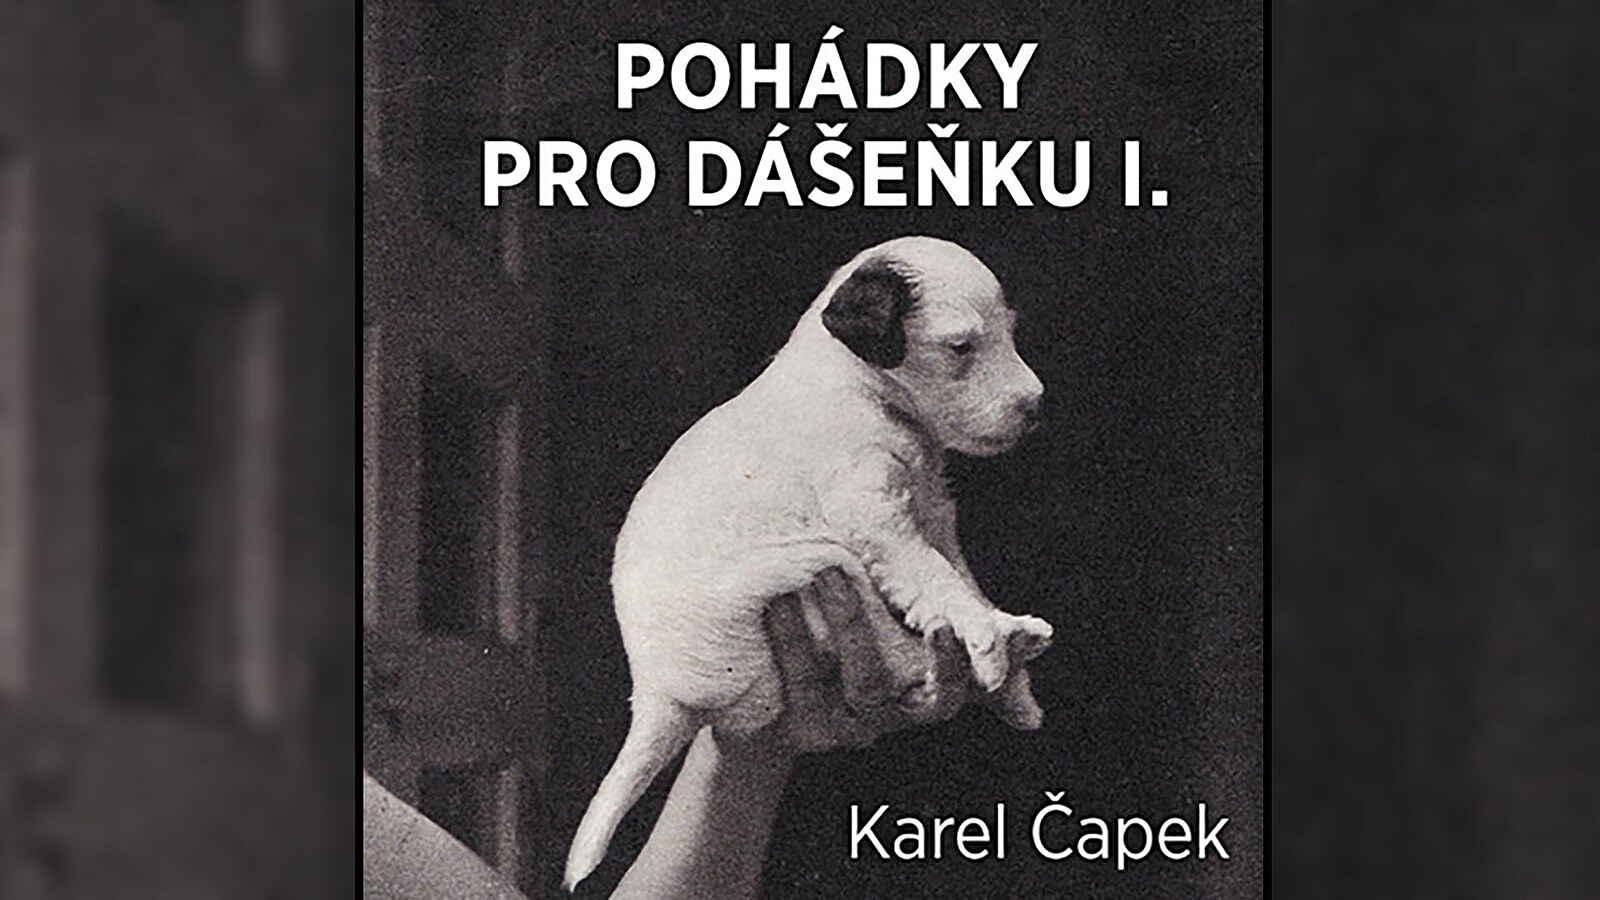 Pohádky pro psí hrdinku Dášeňku od Karla Čapka v audioknize zdarma -  iDNES.cz